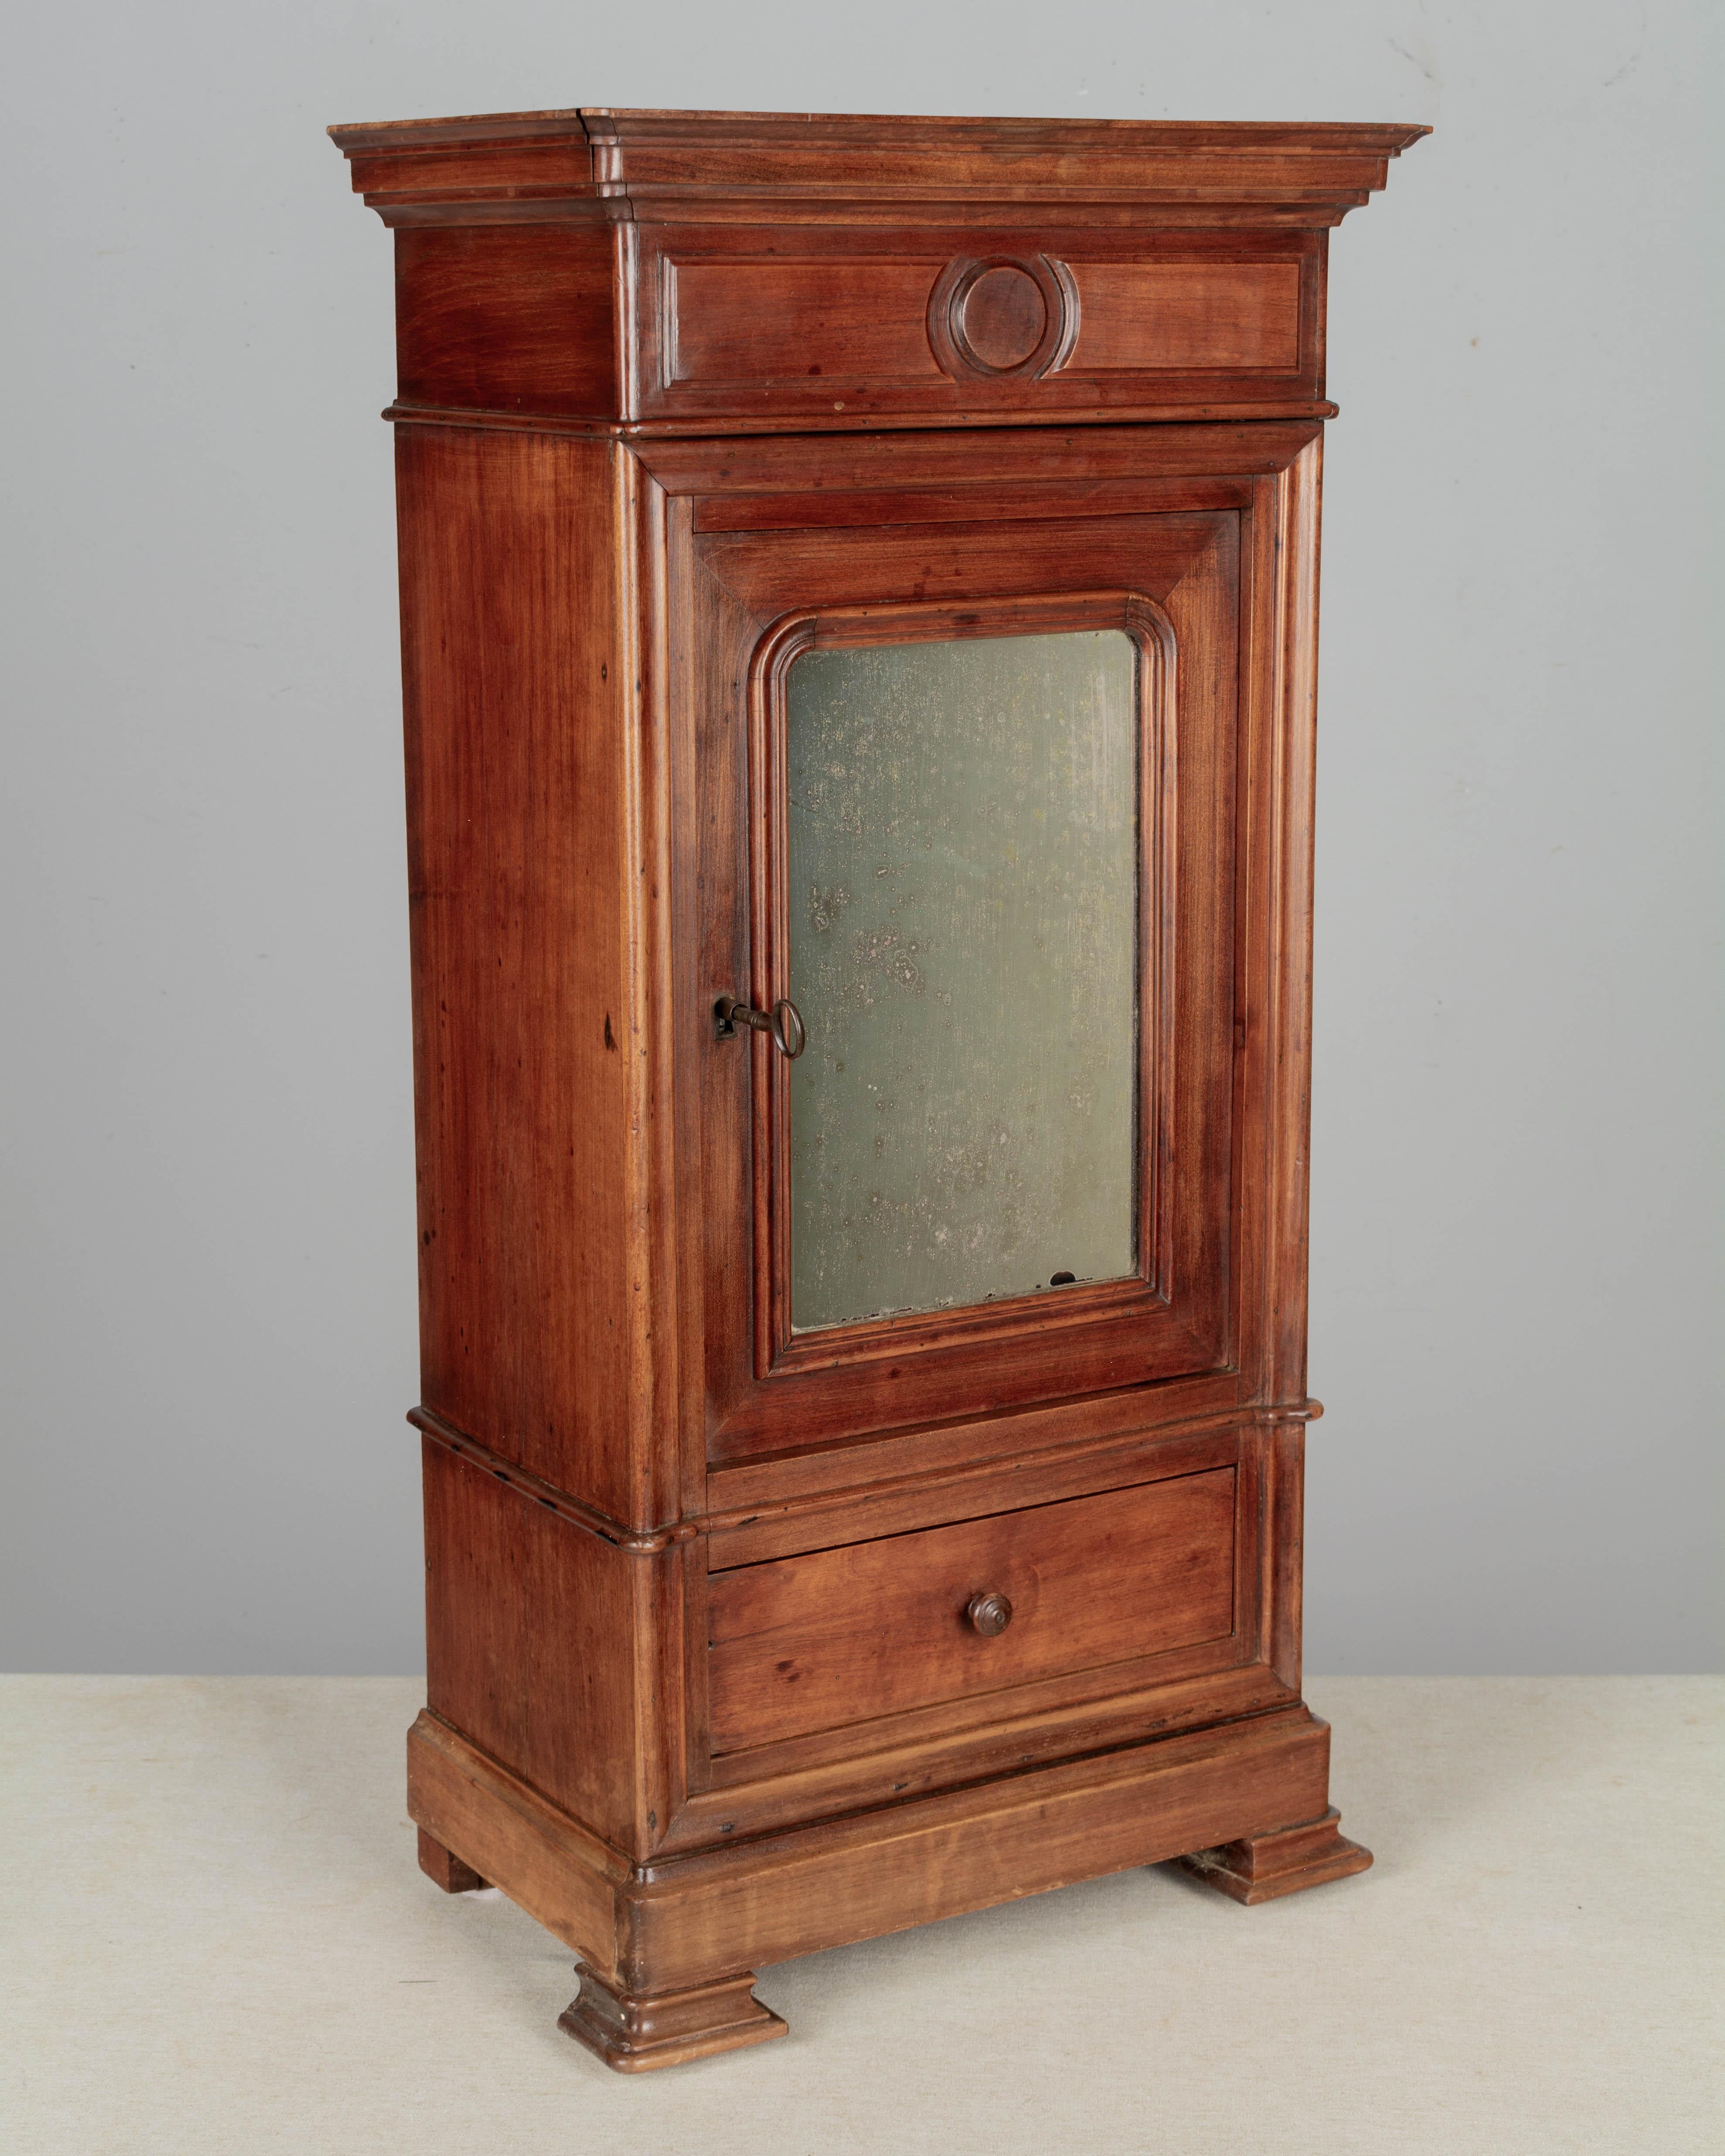 Ein Miniatur-Armoire oder Musterschrank im französischen Louis-Philippe-Stil des 19. Jahrhunderts, handgefertigt aus massivem Nussbaumholz mit einer Spiegeltür und einer schwalbenschwanzförmigen Schublade. Der Innenraum hat einen verstellbaren